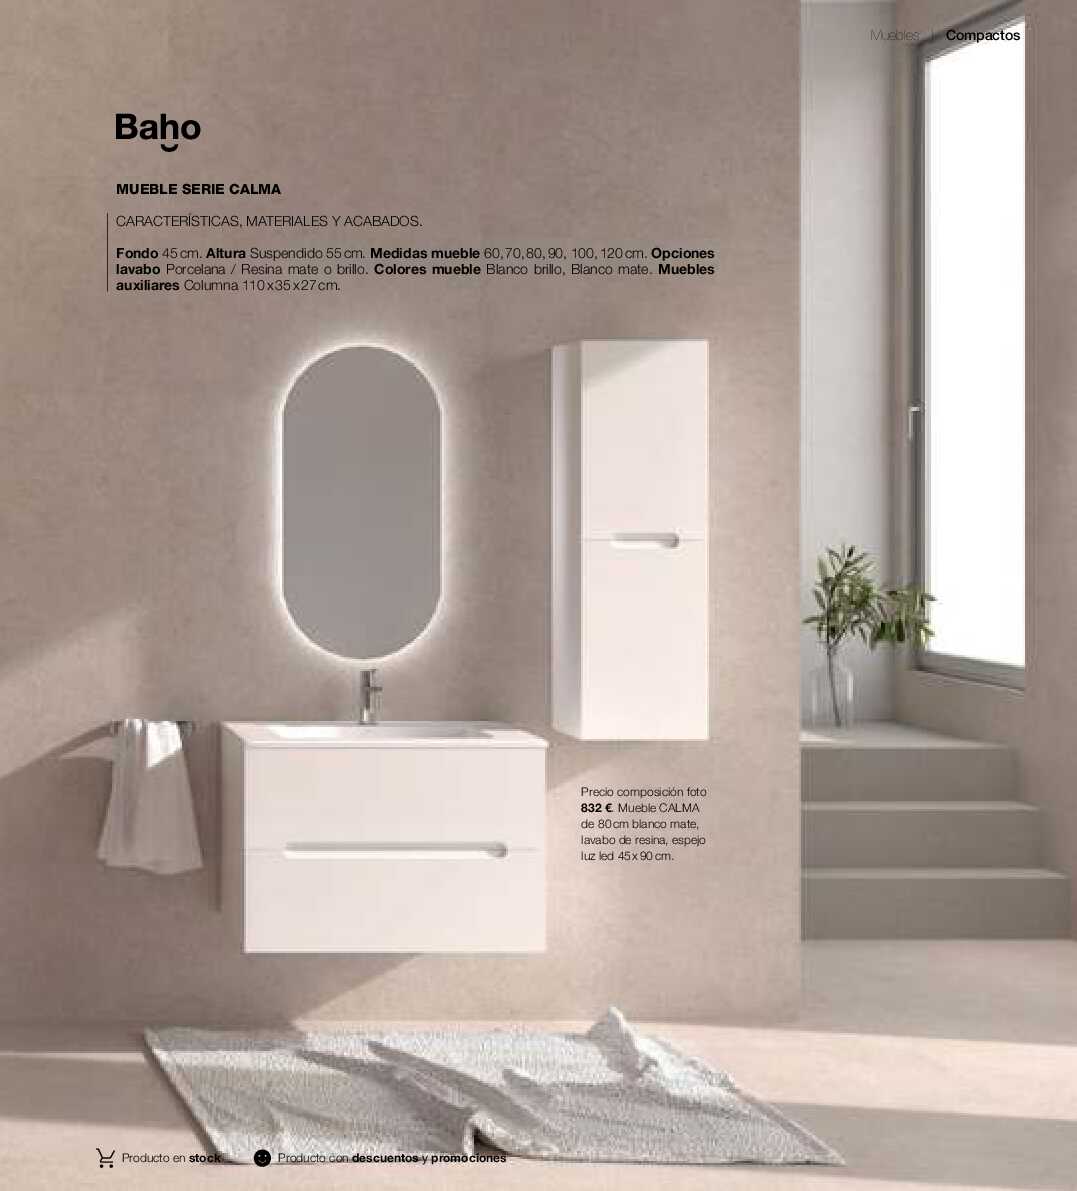 Catálogo de baños Gamma. Página 76